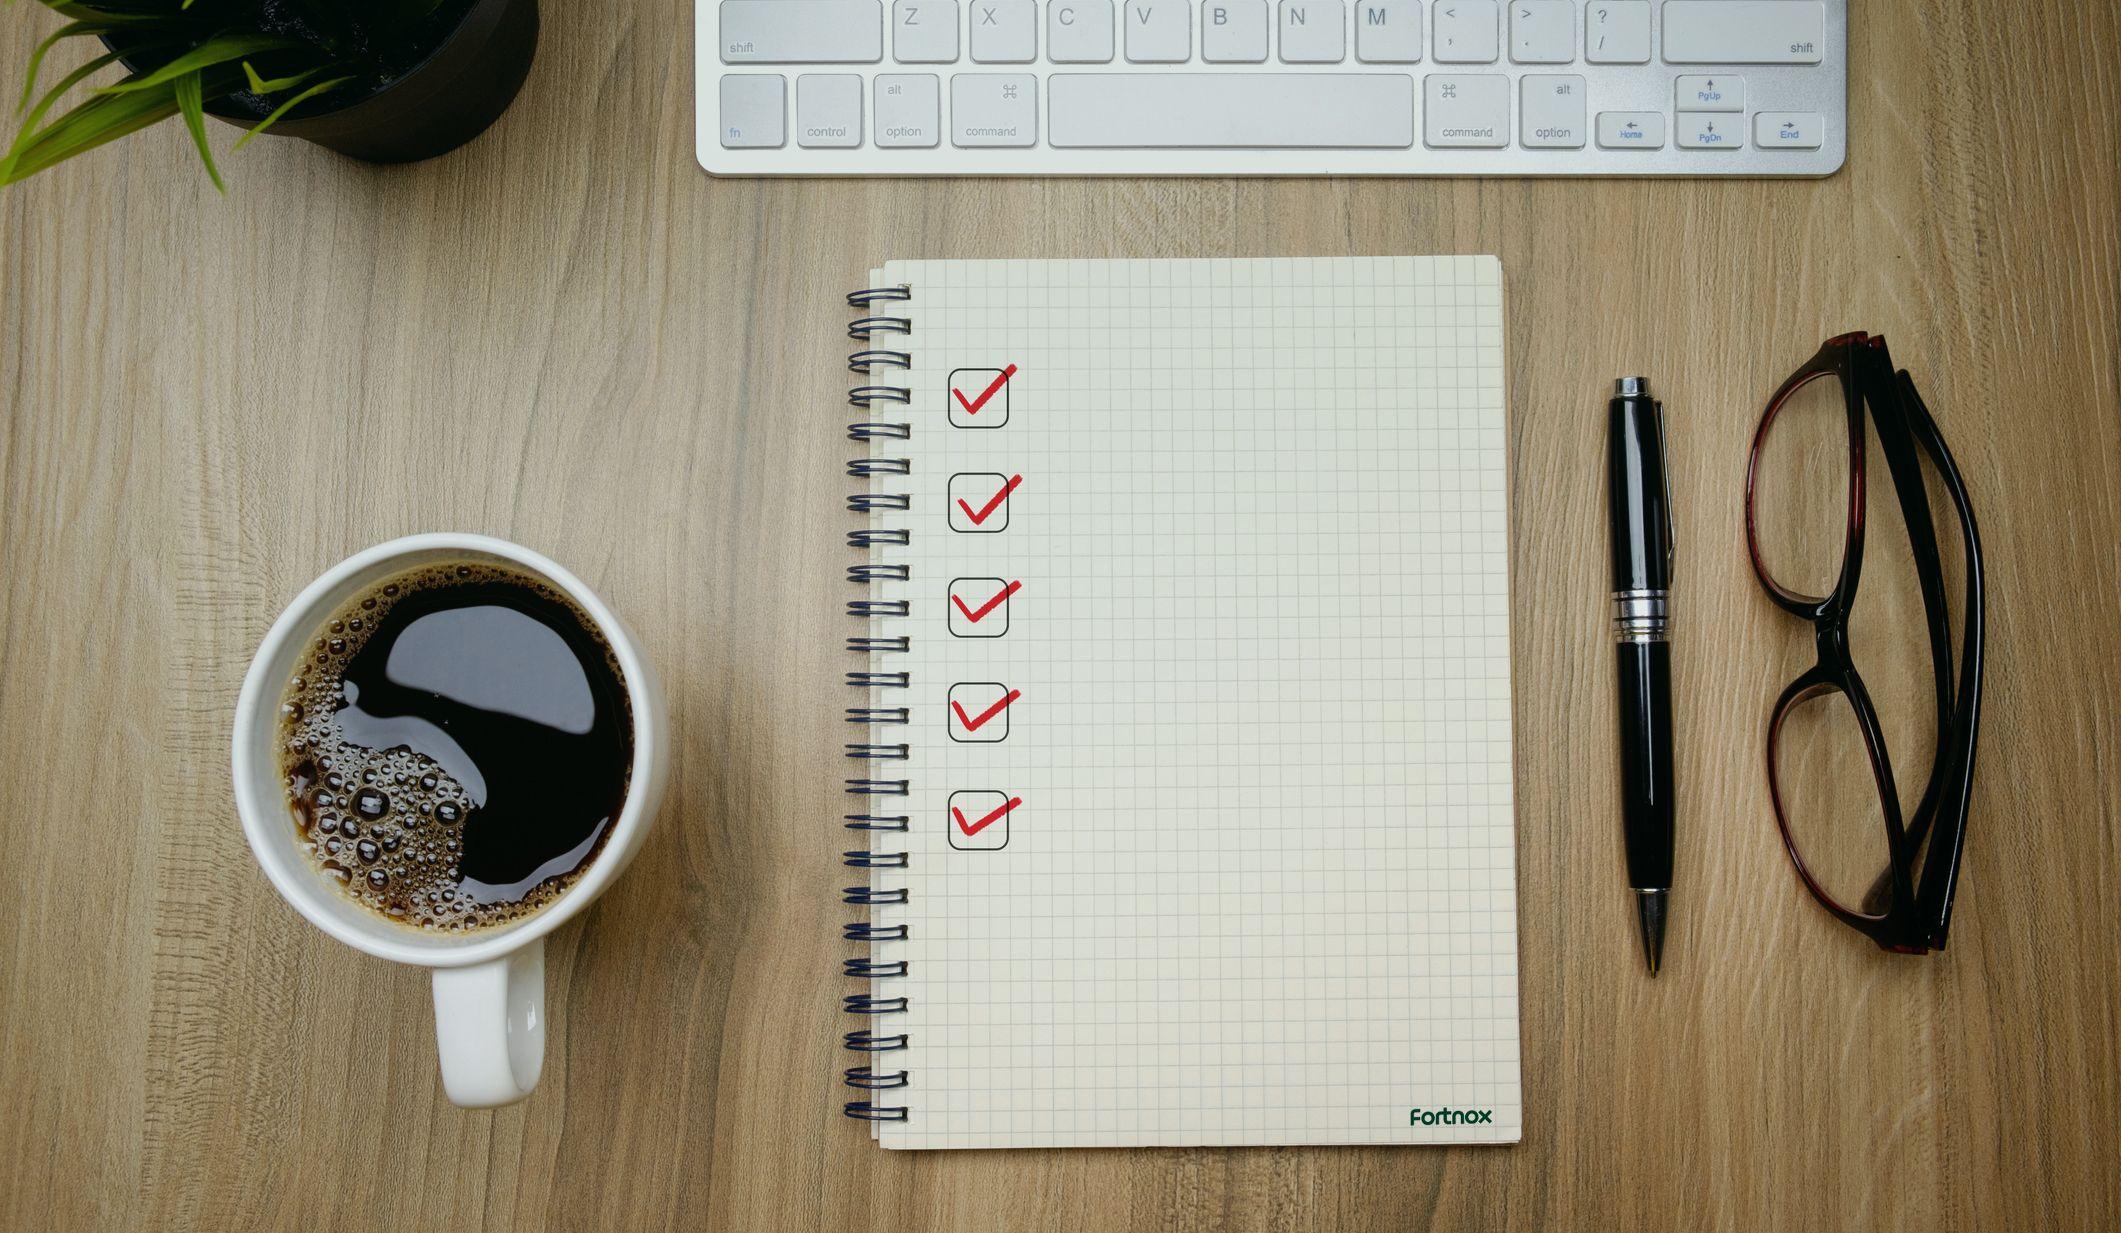 Ett anteckningsblock som symboliserar en checklista med saker att tänka på inför ett nytt år som företagare.